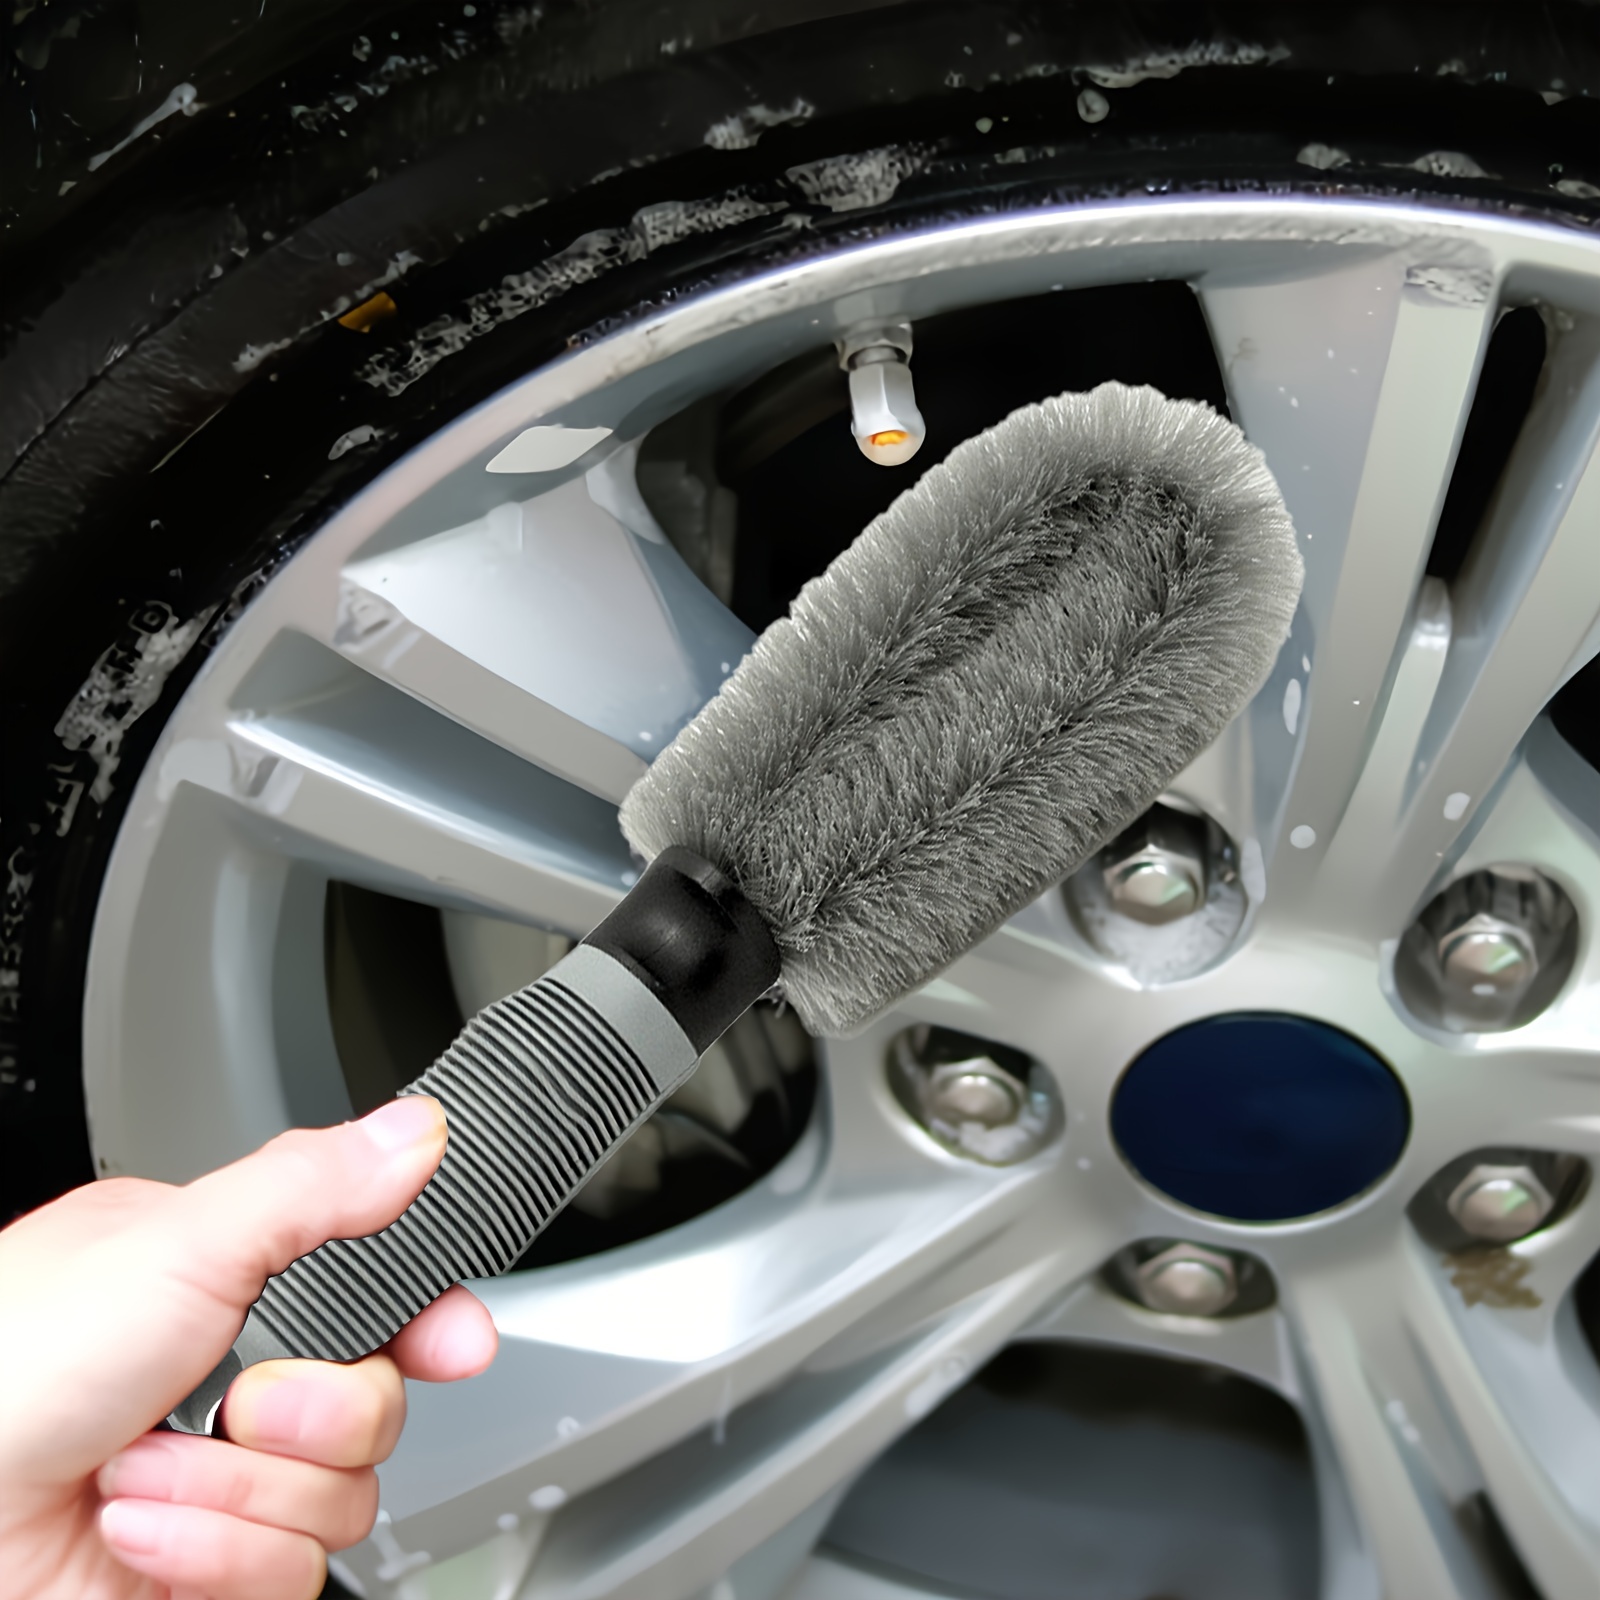  CIYODO Cepillo para neumáticos de coche, cepillo de pintura,  limpiador de llantas, cepillo de motocicleta, herramienta de limpieza de  cepillo de neumáticos de automóvil, cepillo de microfibra para ruedas,  cepillo de